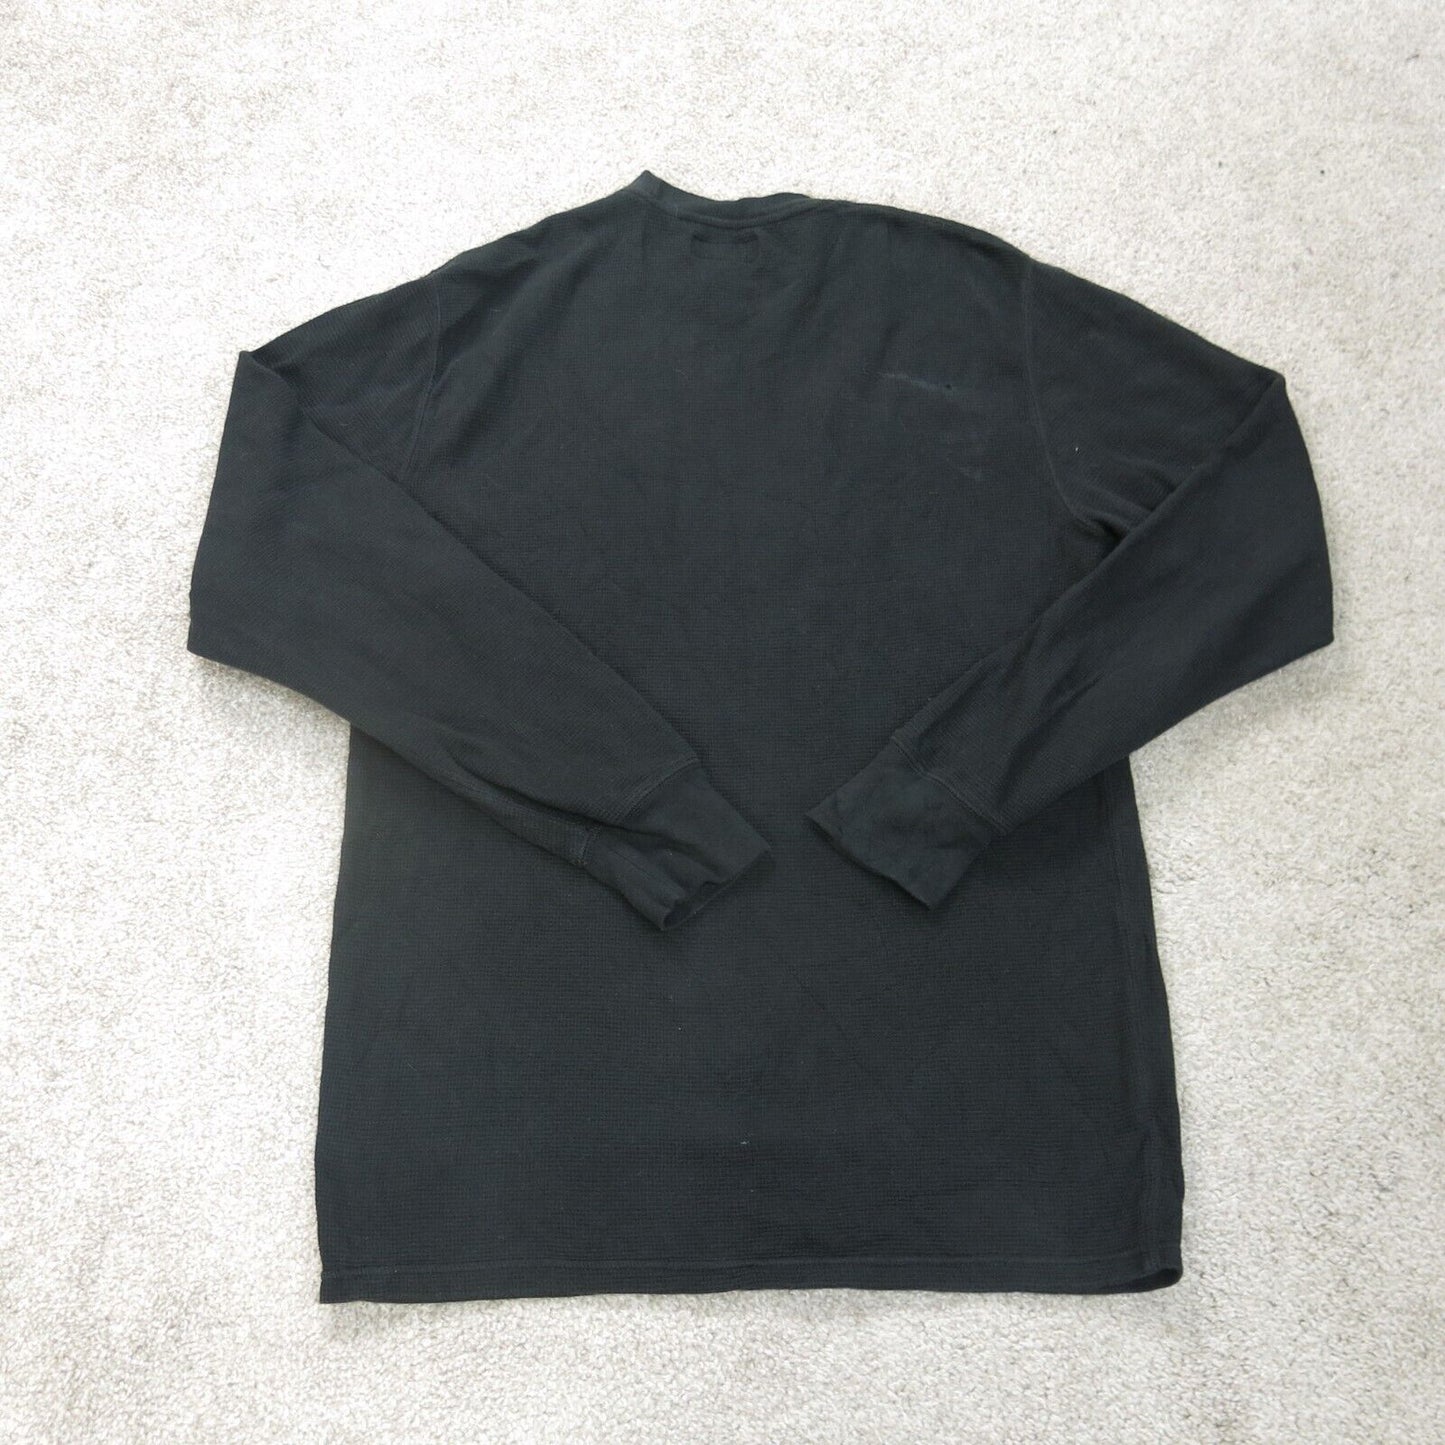 Polo Ralph Lauren Shirt Mens Medium Black Crew Neck Long Sleeve Lightweight